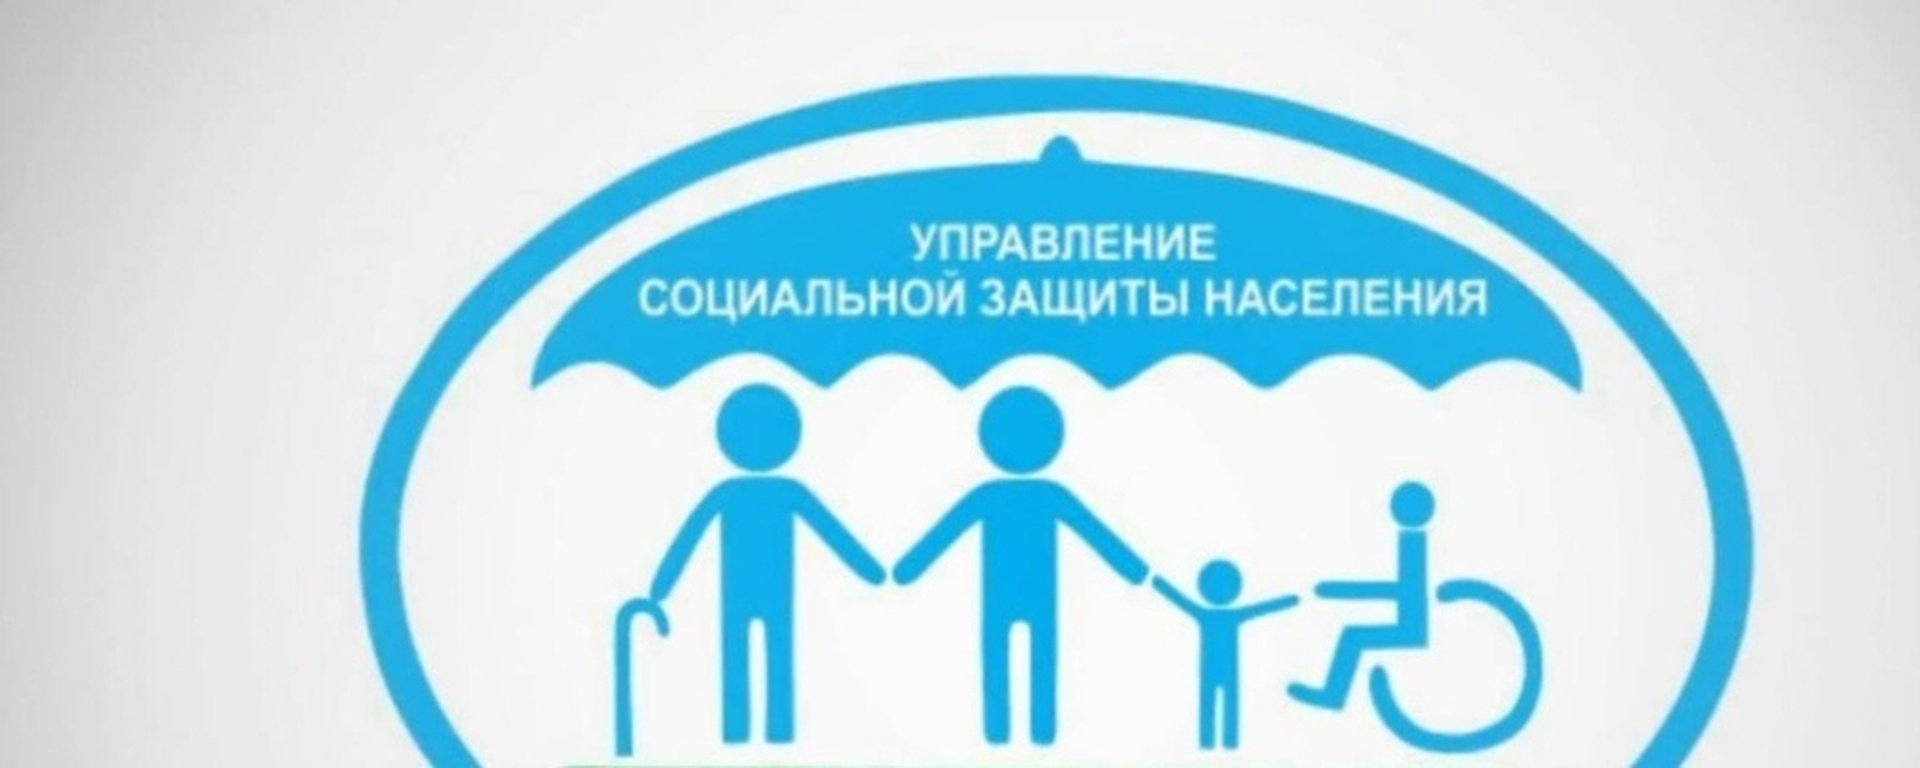 Социальная защита населения письменно. Новосибирский отдел соцзащиты населения. Социальная защита. Организация социальной защиты населения. Эмблема социальной защиты населения.